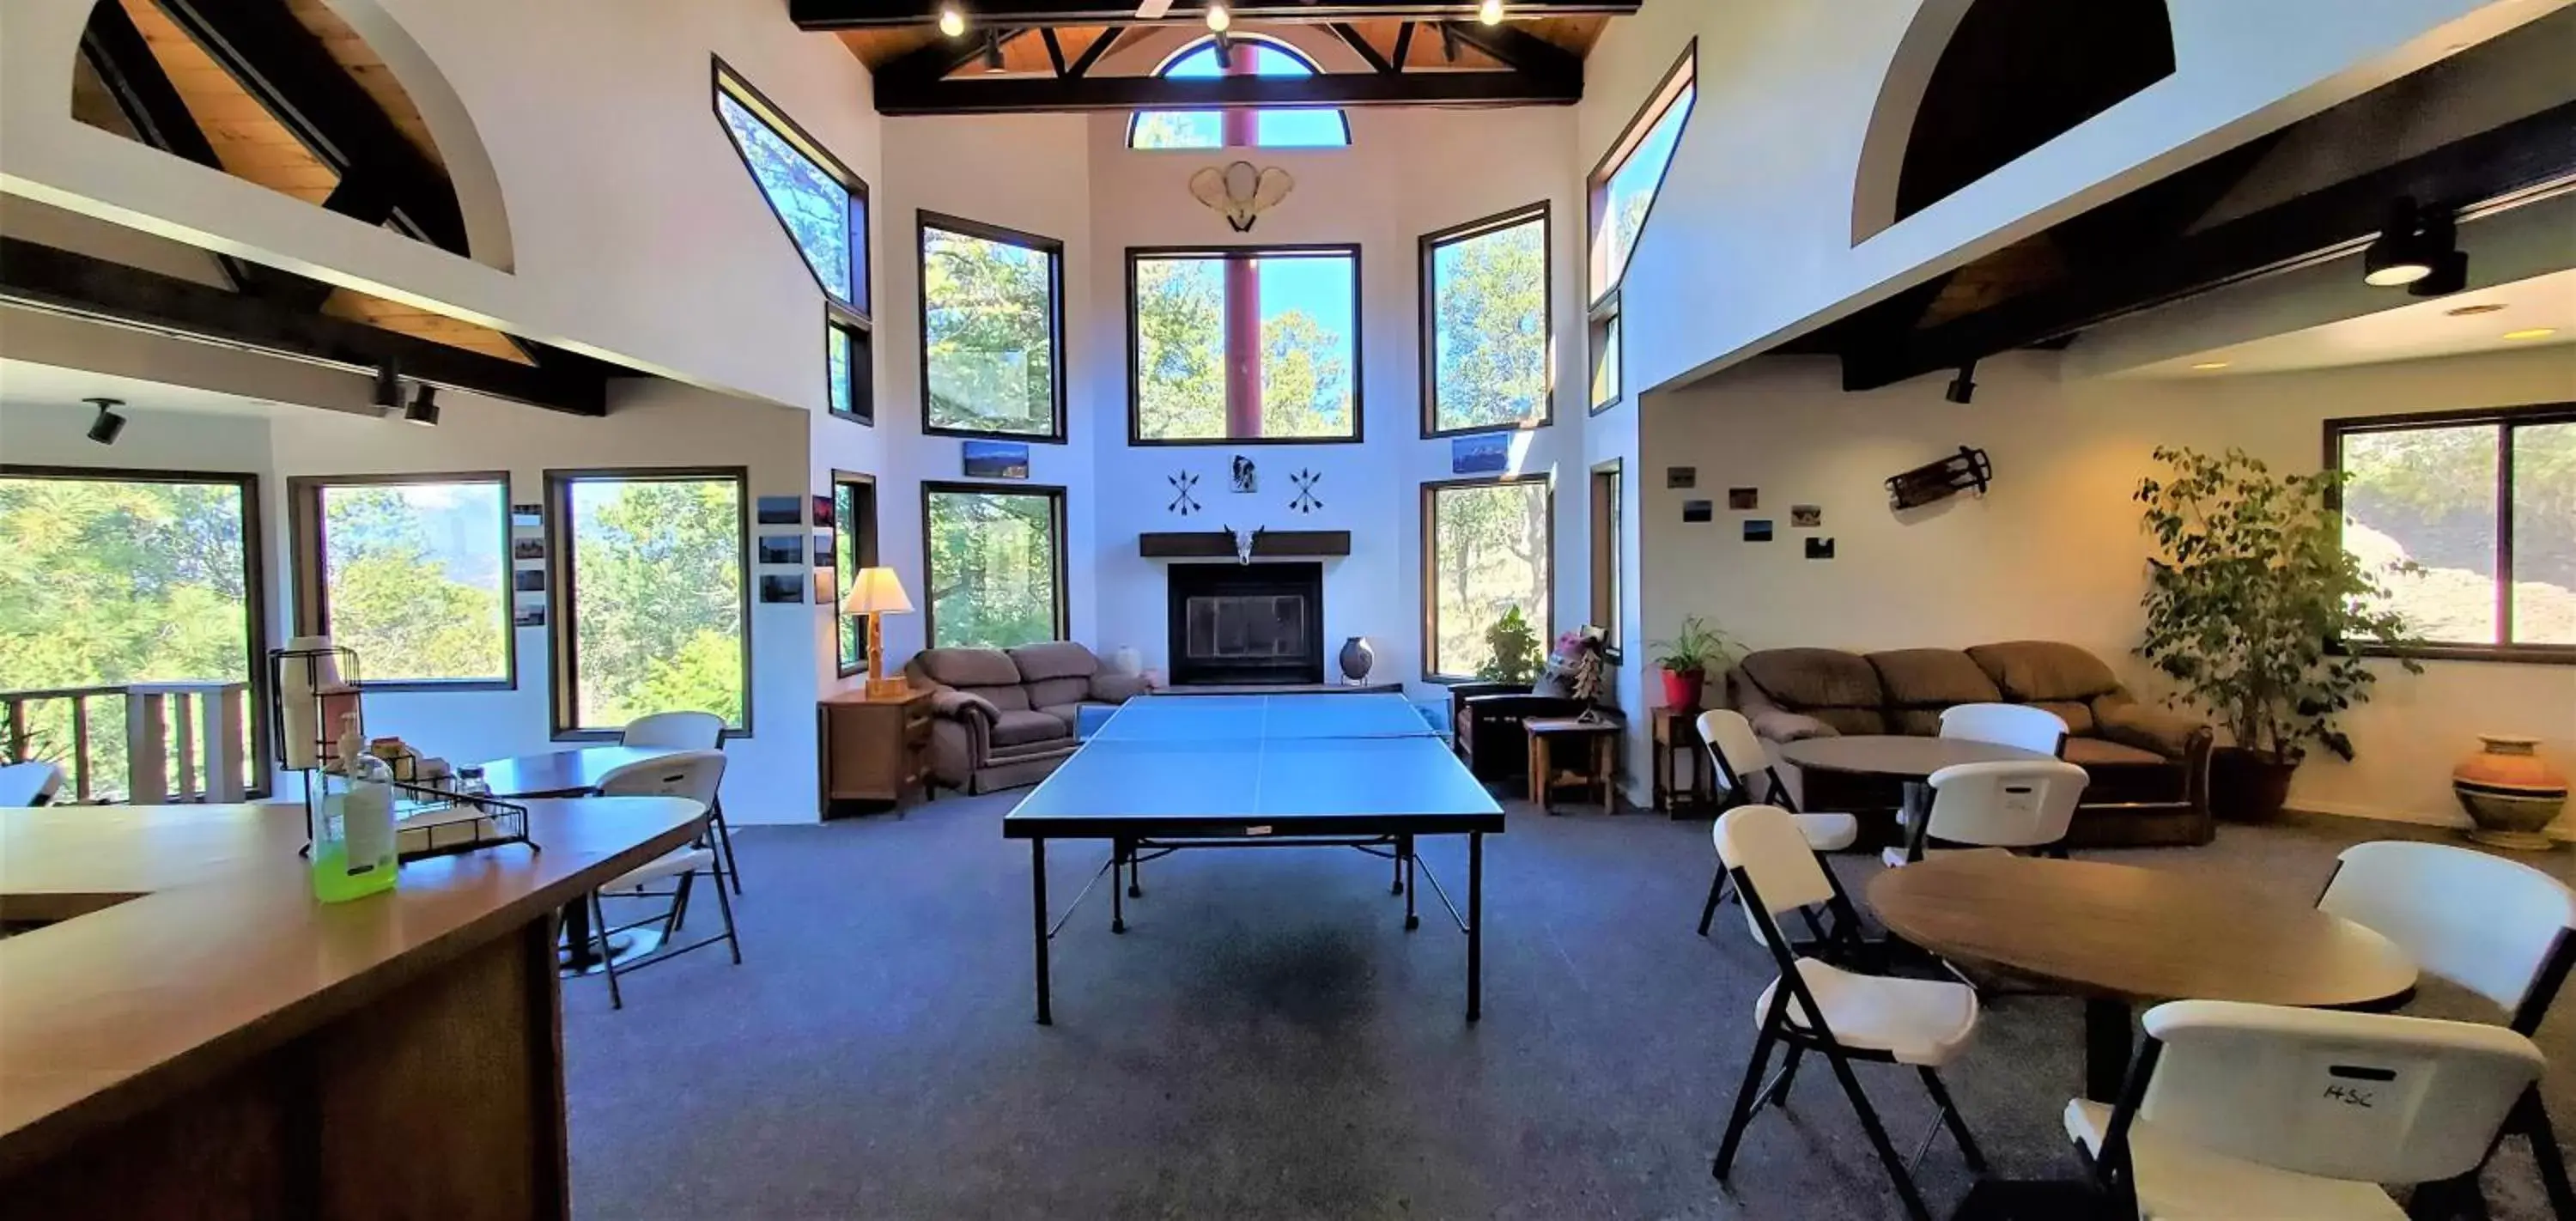 Table tennis in High Sierra Condominiums